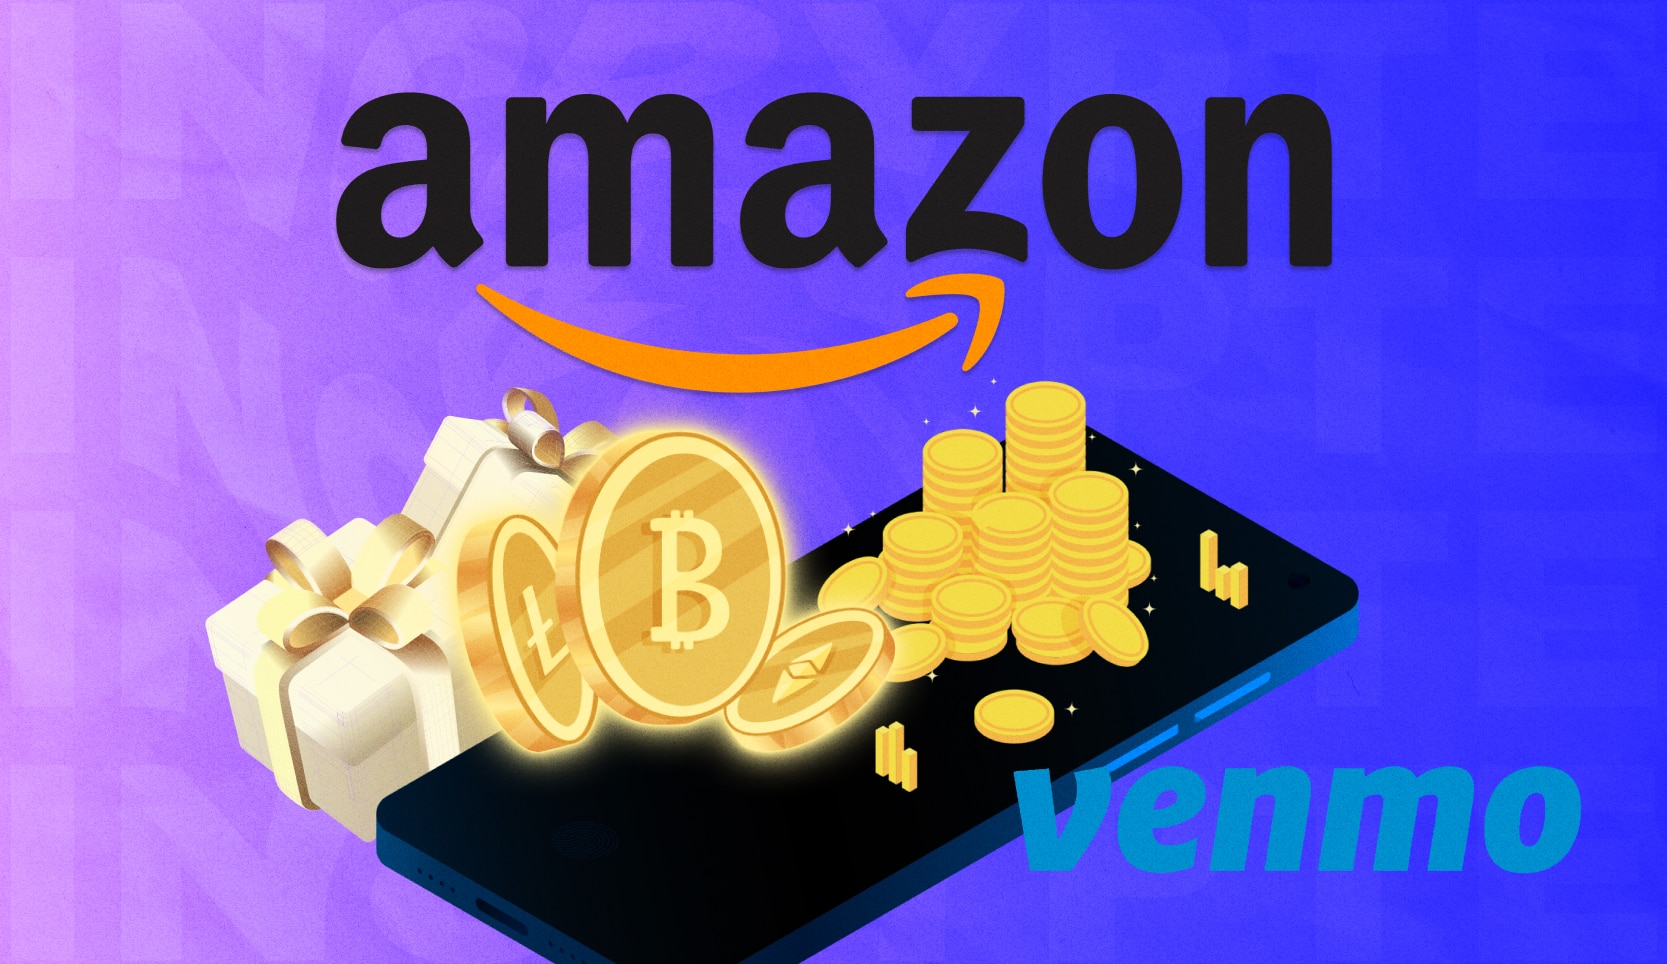 Клієнти Amazon отримали можливість оплачувати покупки через Venmo. Головний колаж новини.